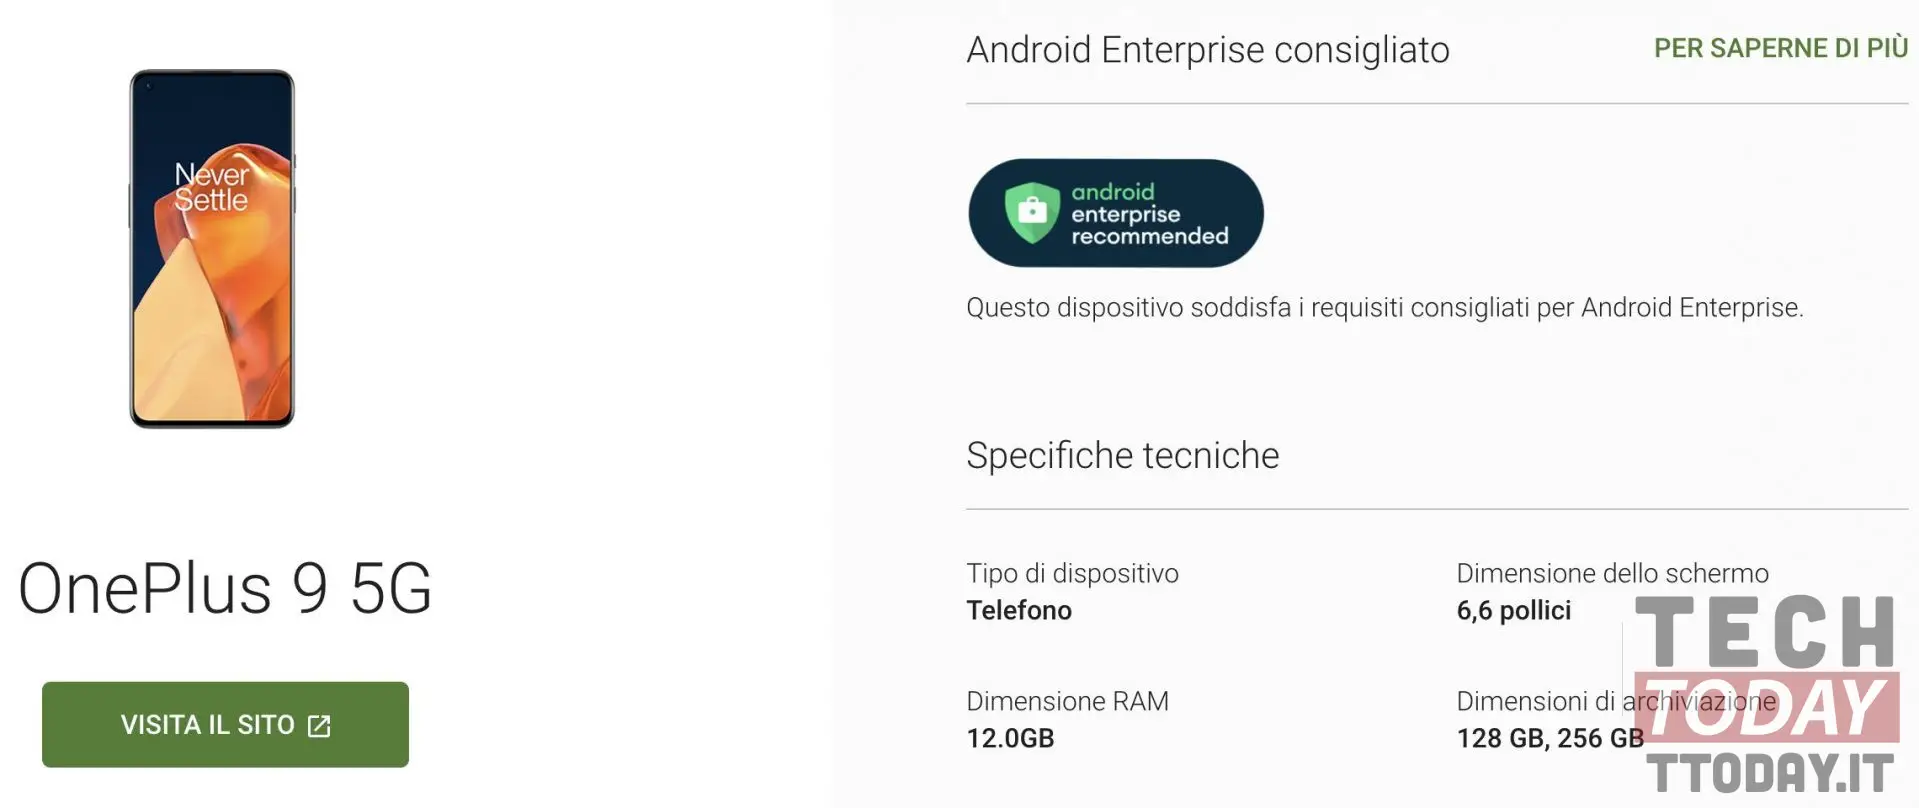 oneplus 9 è da oggi android enterprise recommended